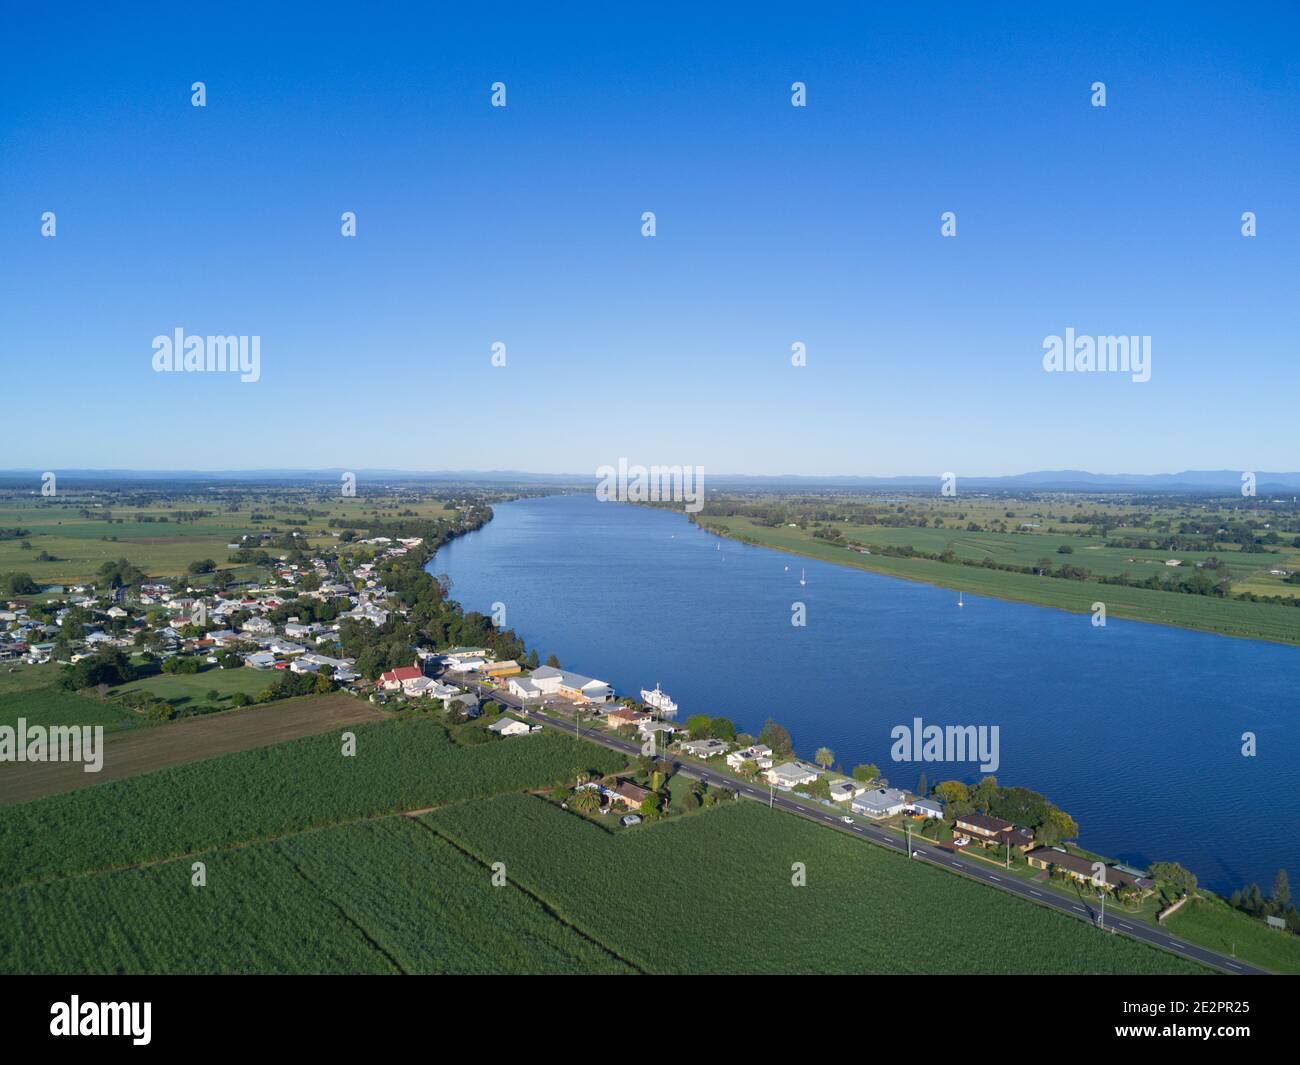 Das kleine Dorf Ulmarra am Fluss Clarence Northern New South Wales Australien Stockfoto